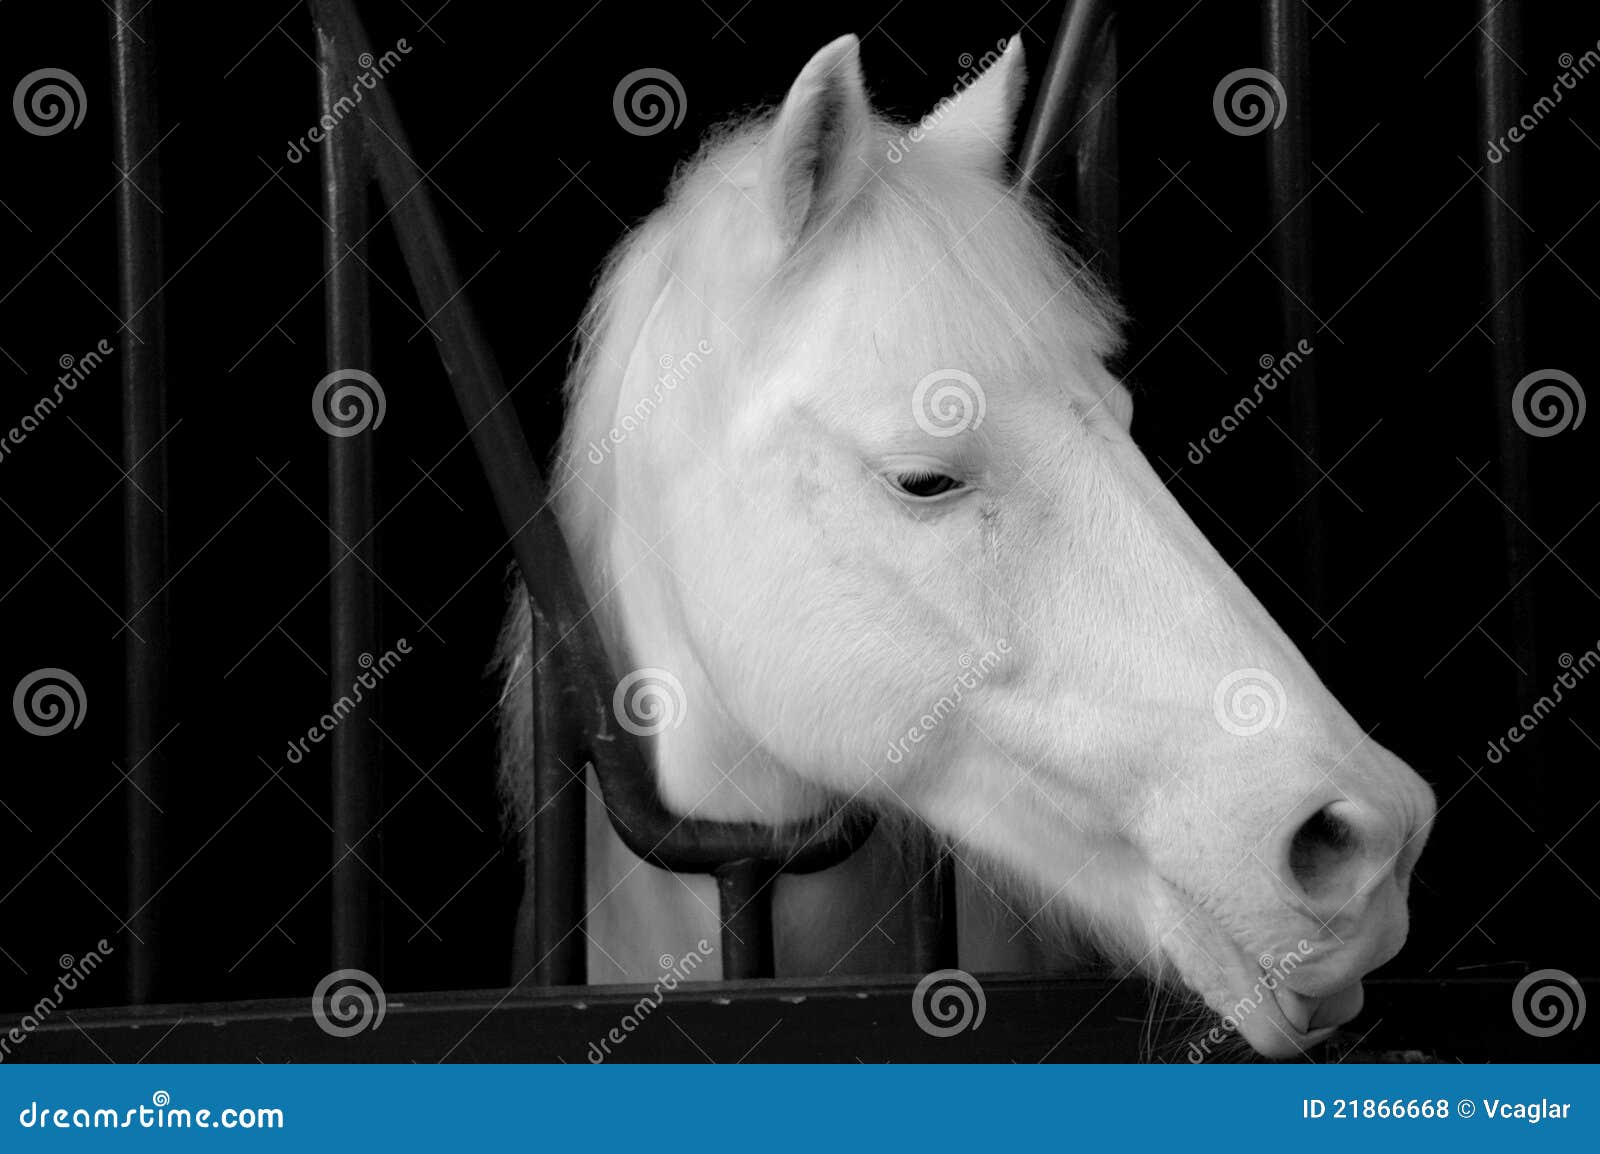 Cabeça de cavalo branco no preto. Um cavalo branco em sua gaiola